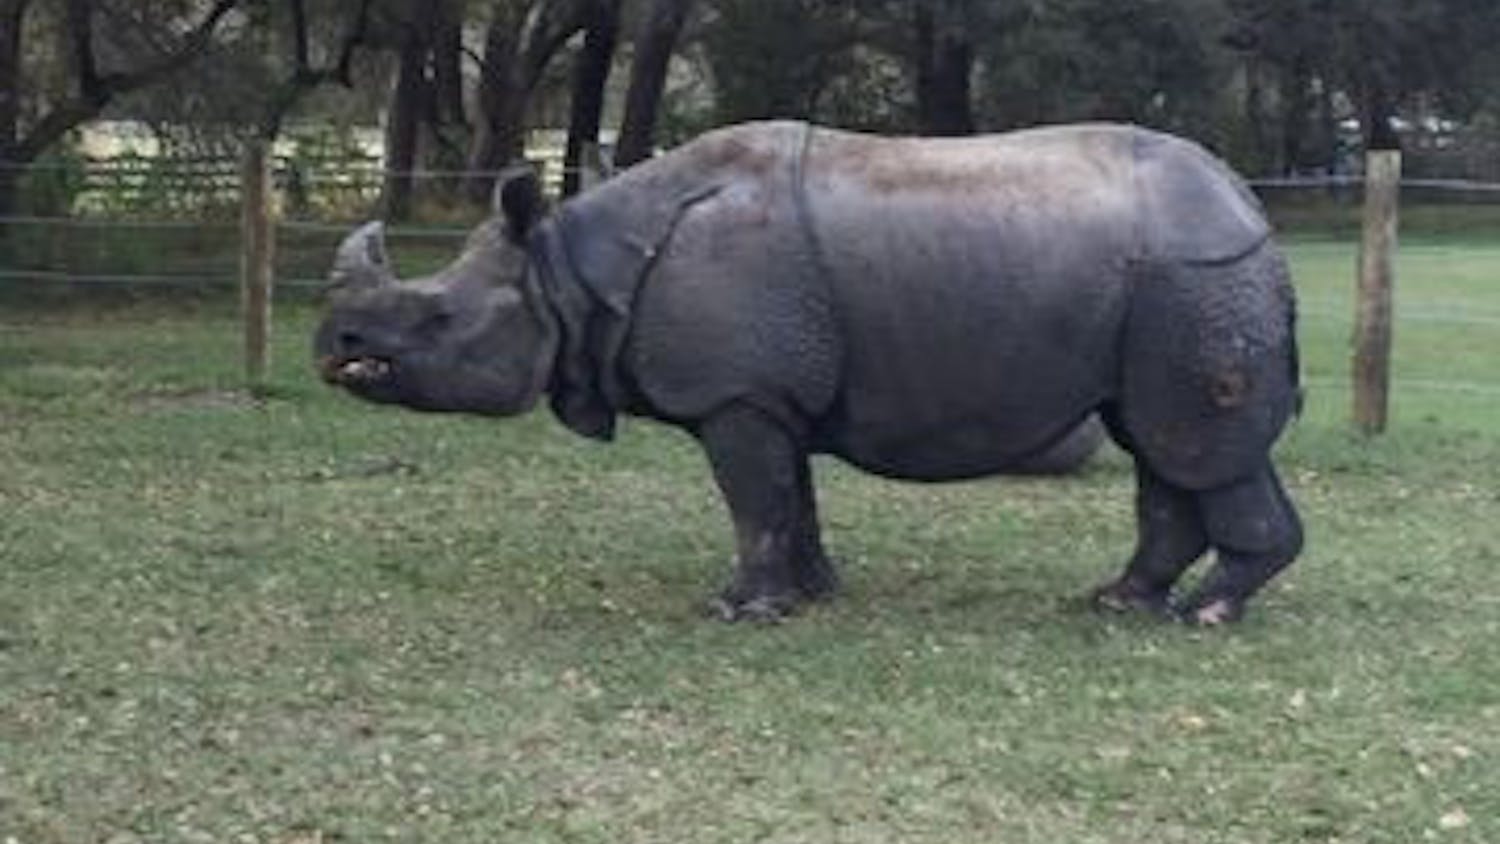 Henry the rhino